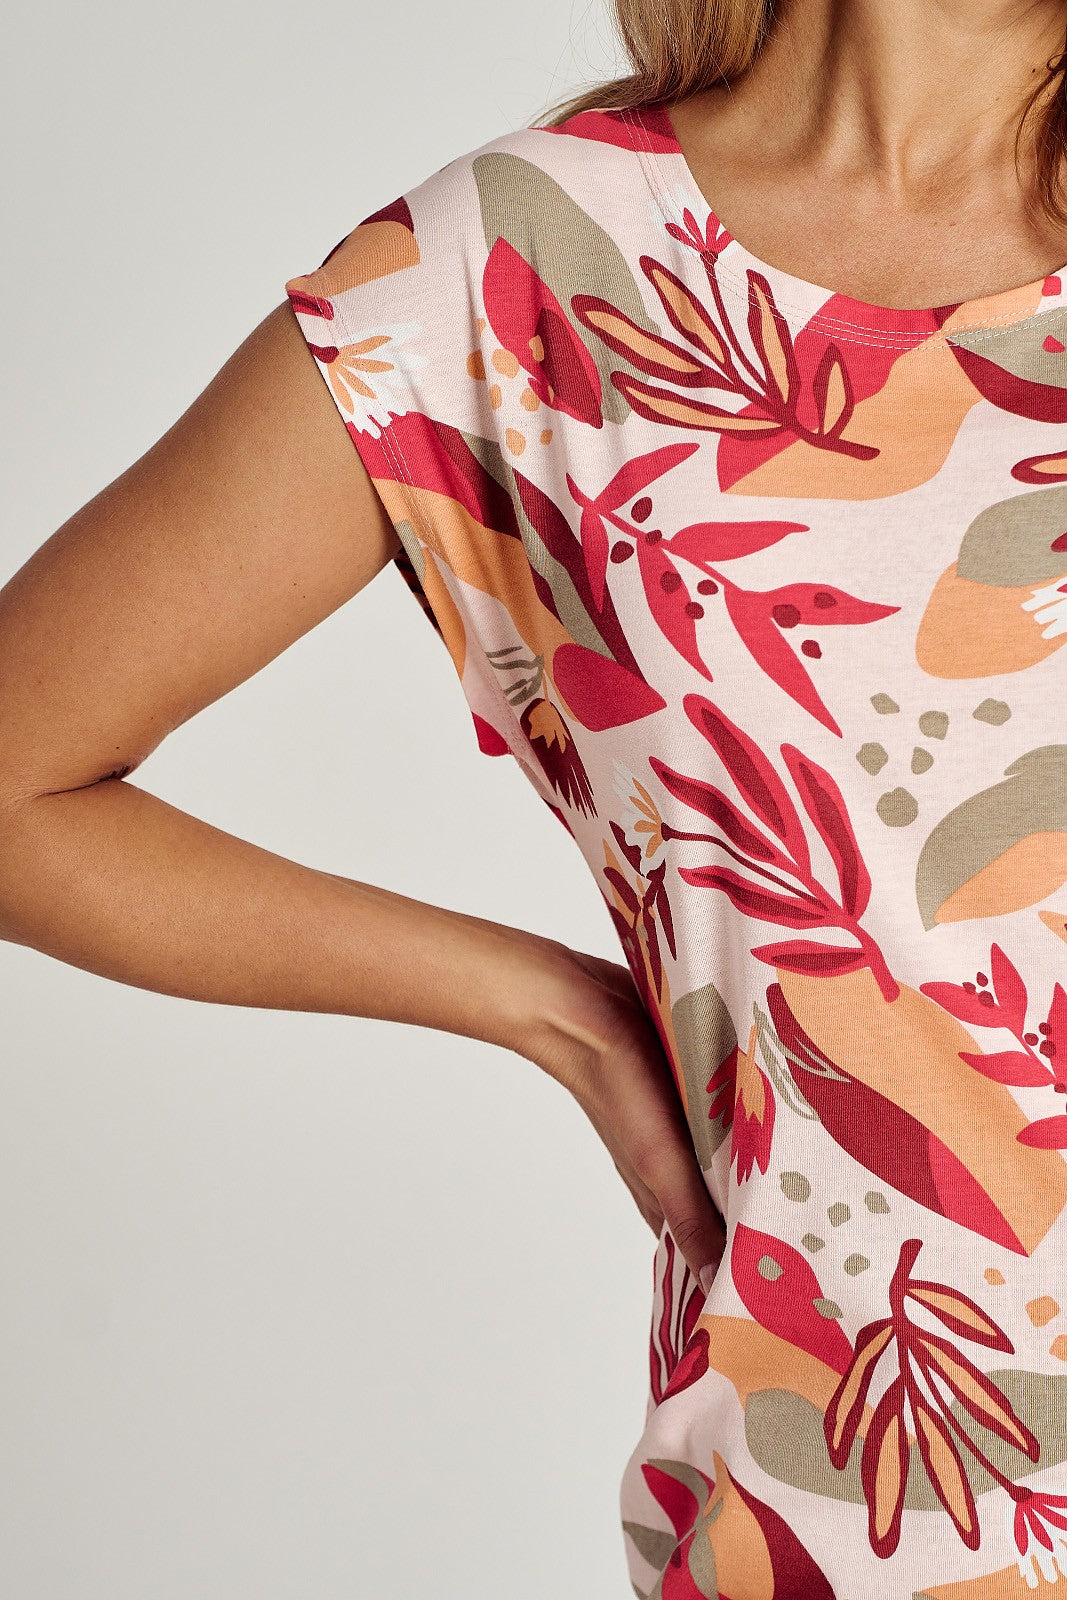 Camicia da donna in puro cotone con stampa floreale colorata. Maniche corte, scollo semicircolare, lunghezza al ginocchio con spacchi sul fondo.  Composizione: 100% cotone